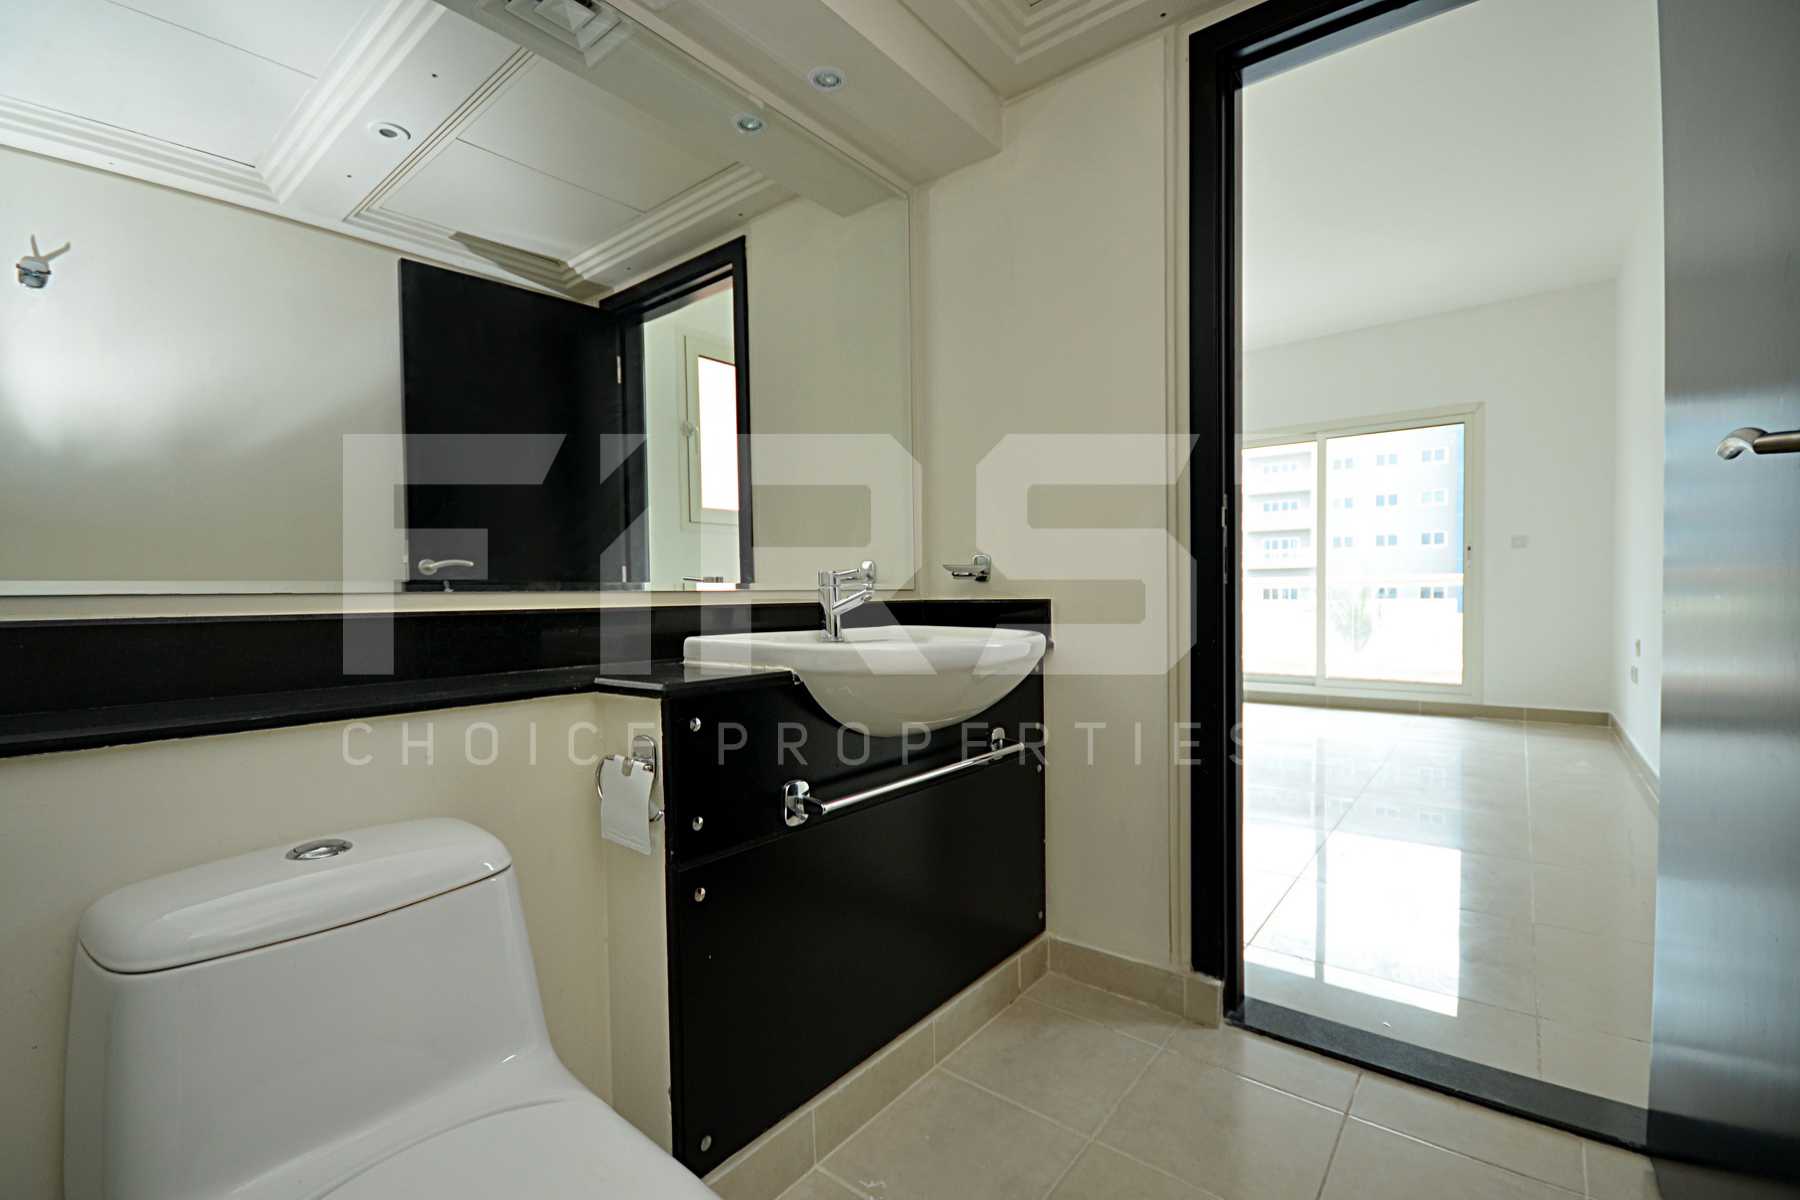 Internal Photo of 4 Bedroom Villa in Al Reef Villas Al Reef Abu Dhabi UAE 265.5 sq.m 2858 sq.ft (20).jpg